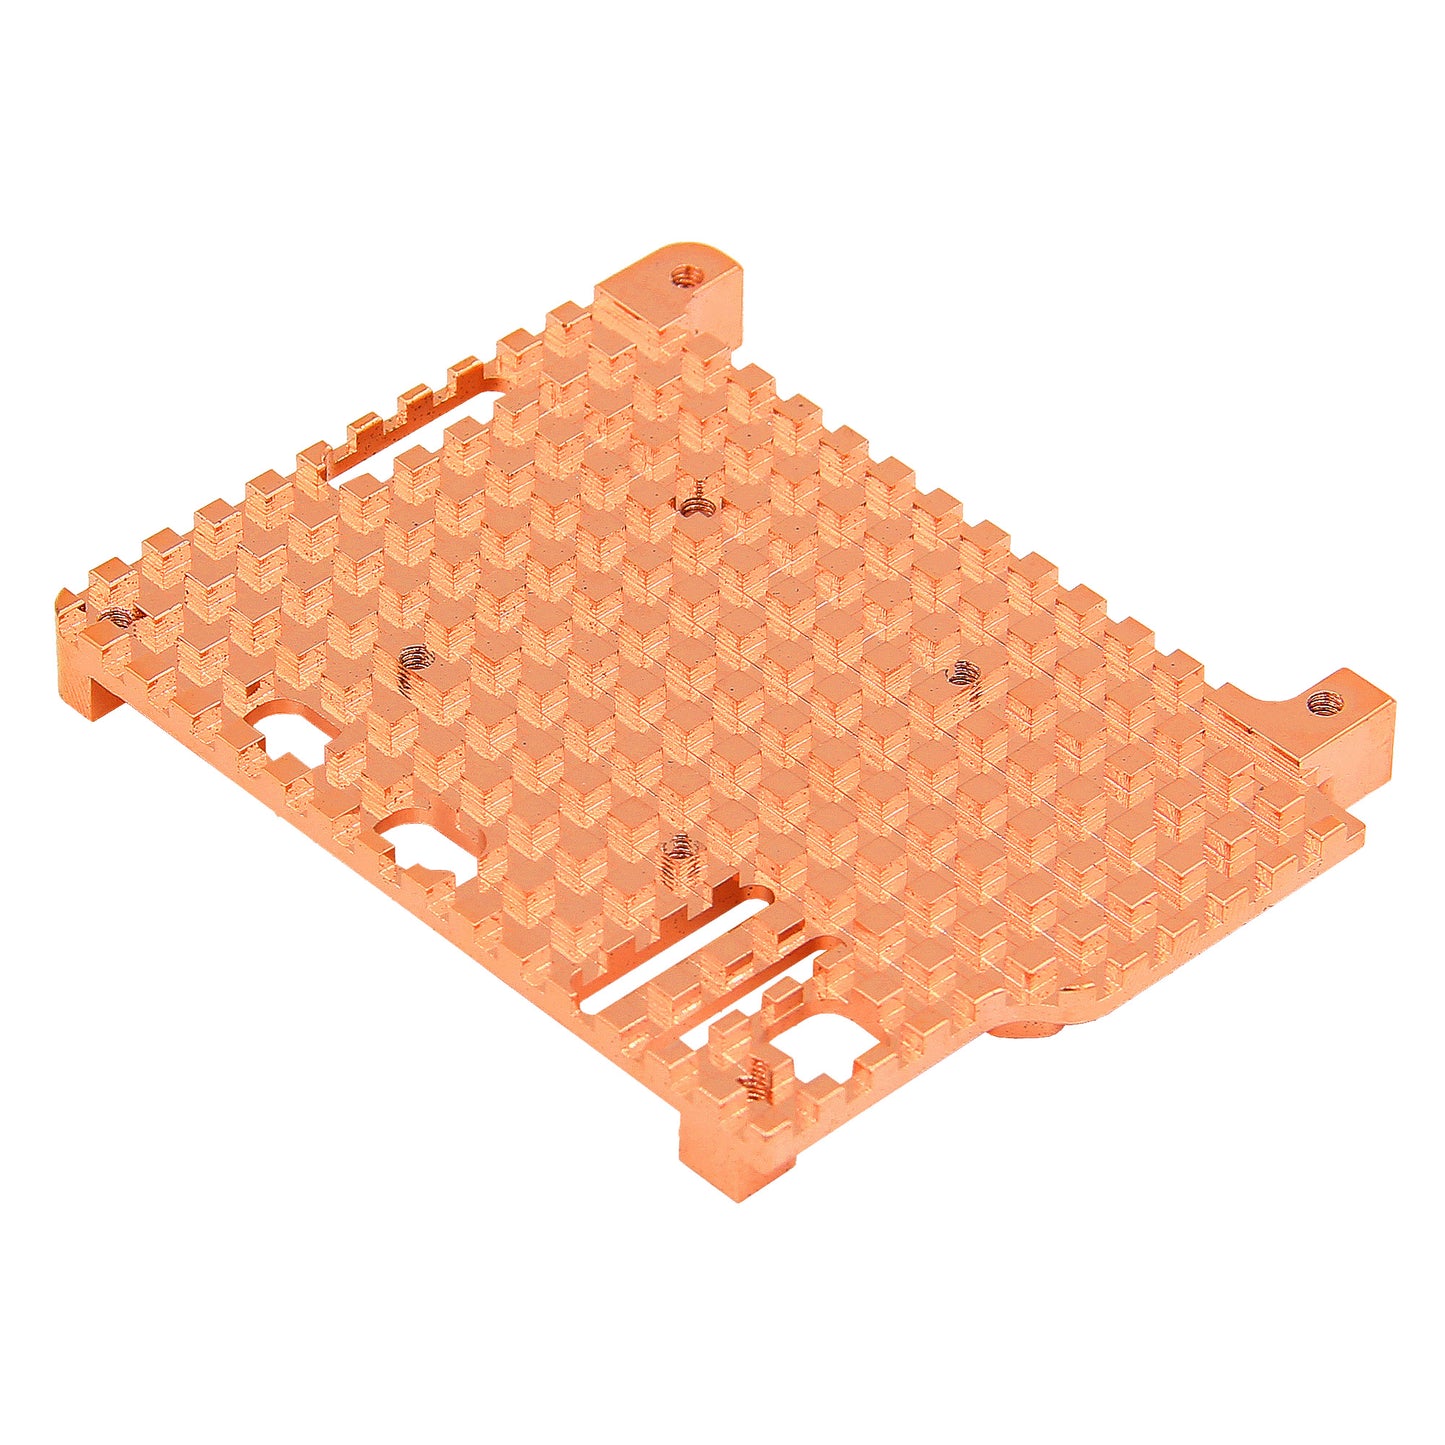 Geekworm Copper Heatsink for Raspberry Pi 5 (H502)